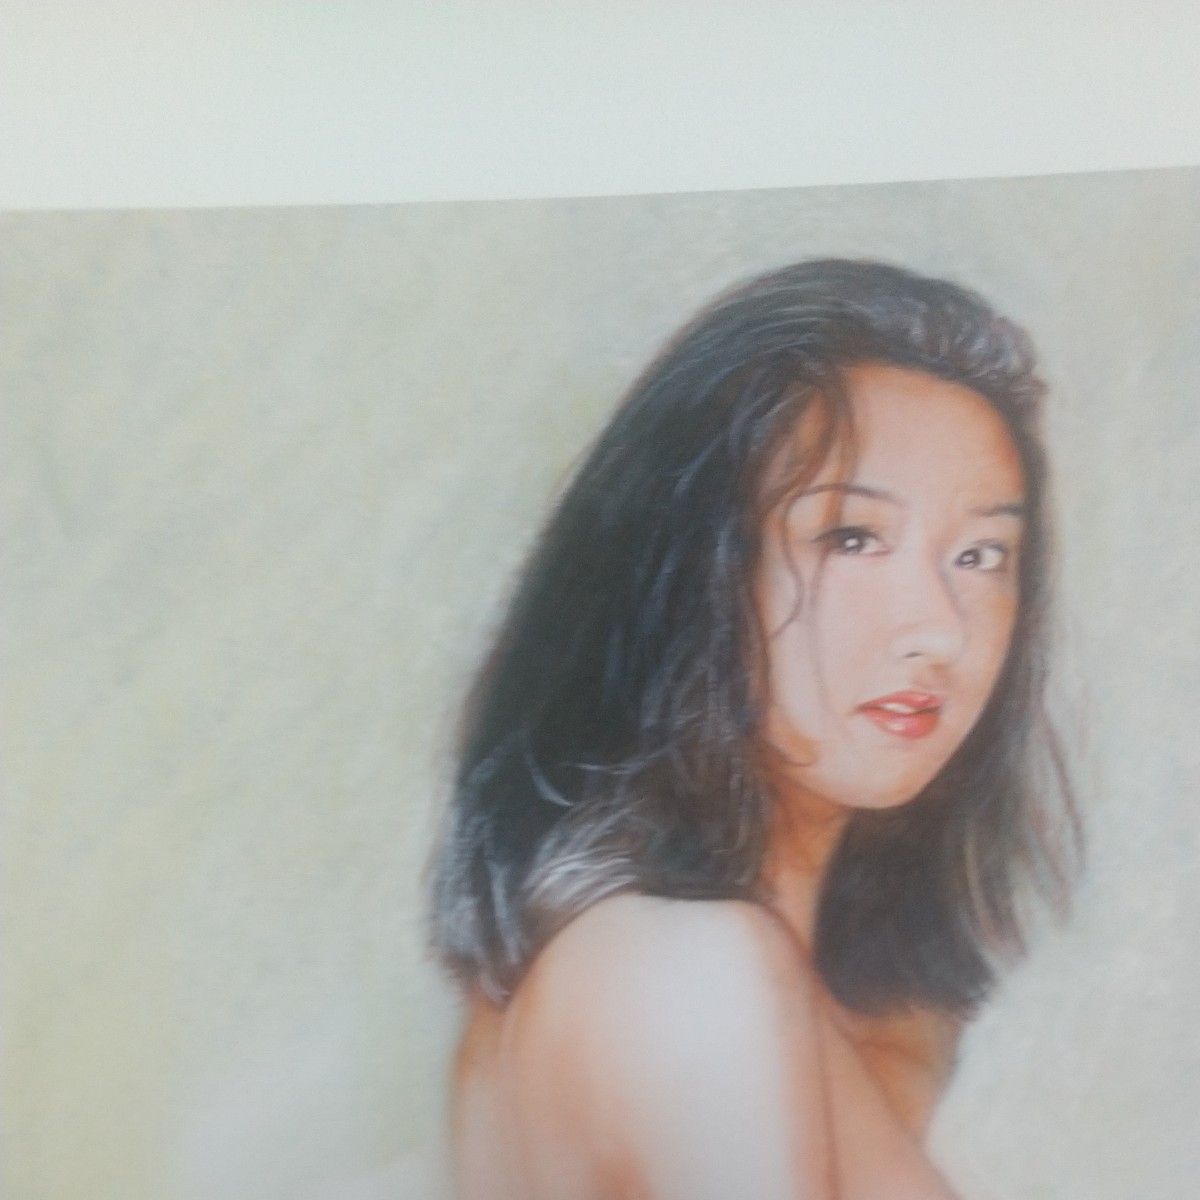 石川吾朗の原画、版画カラーアート限定版  [裸婦129]  本人より入手